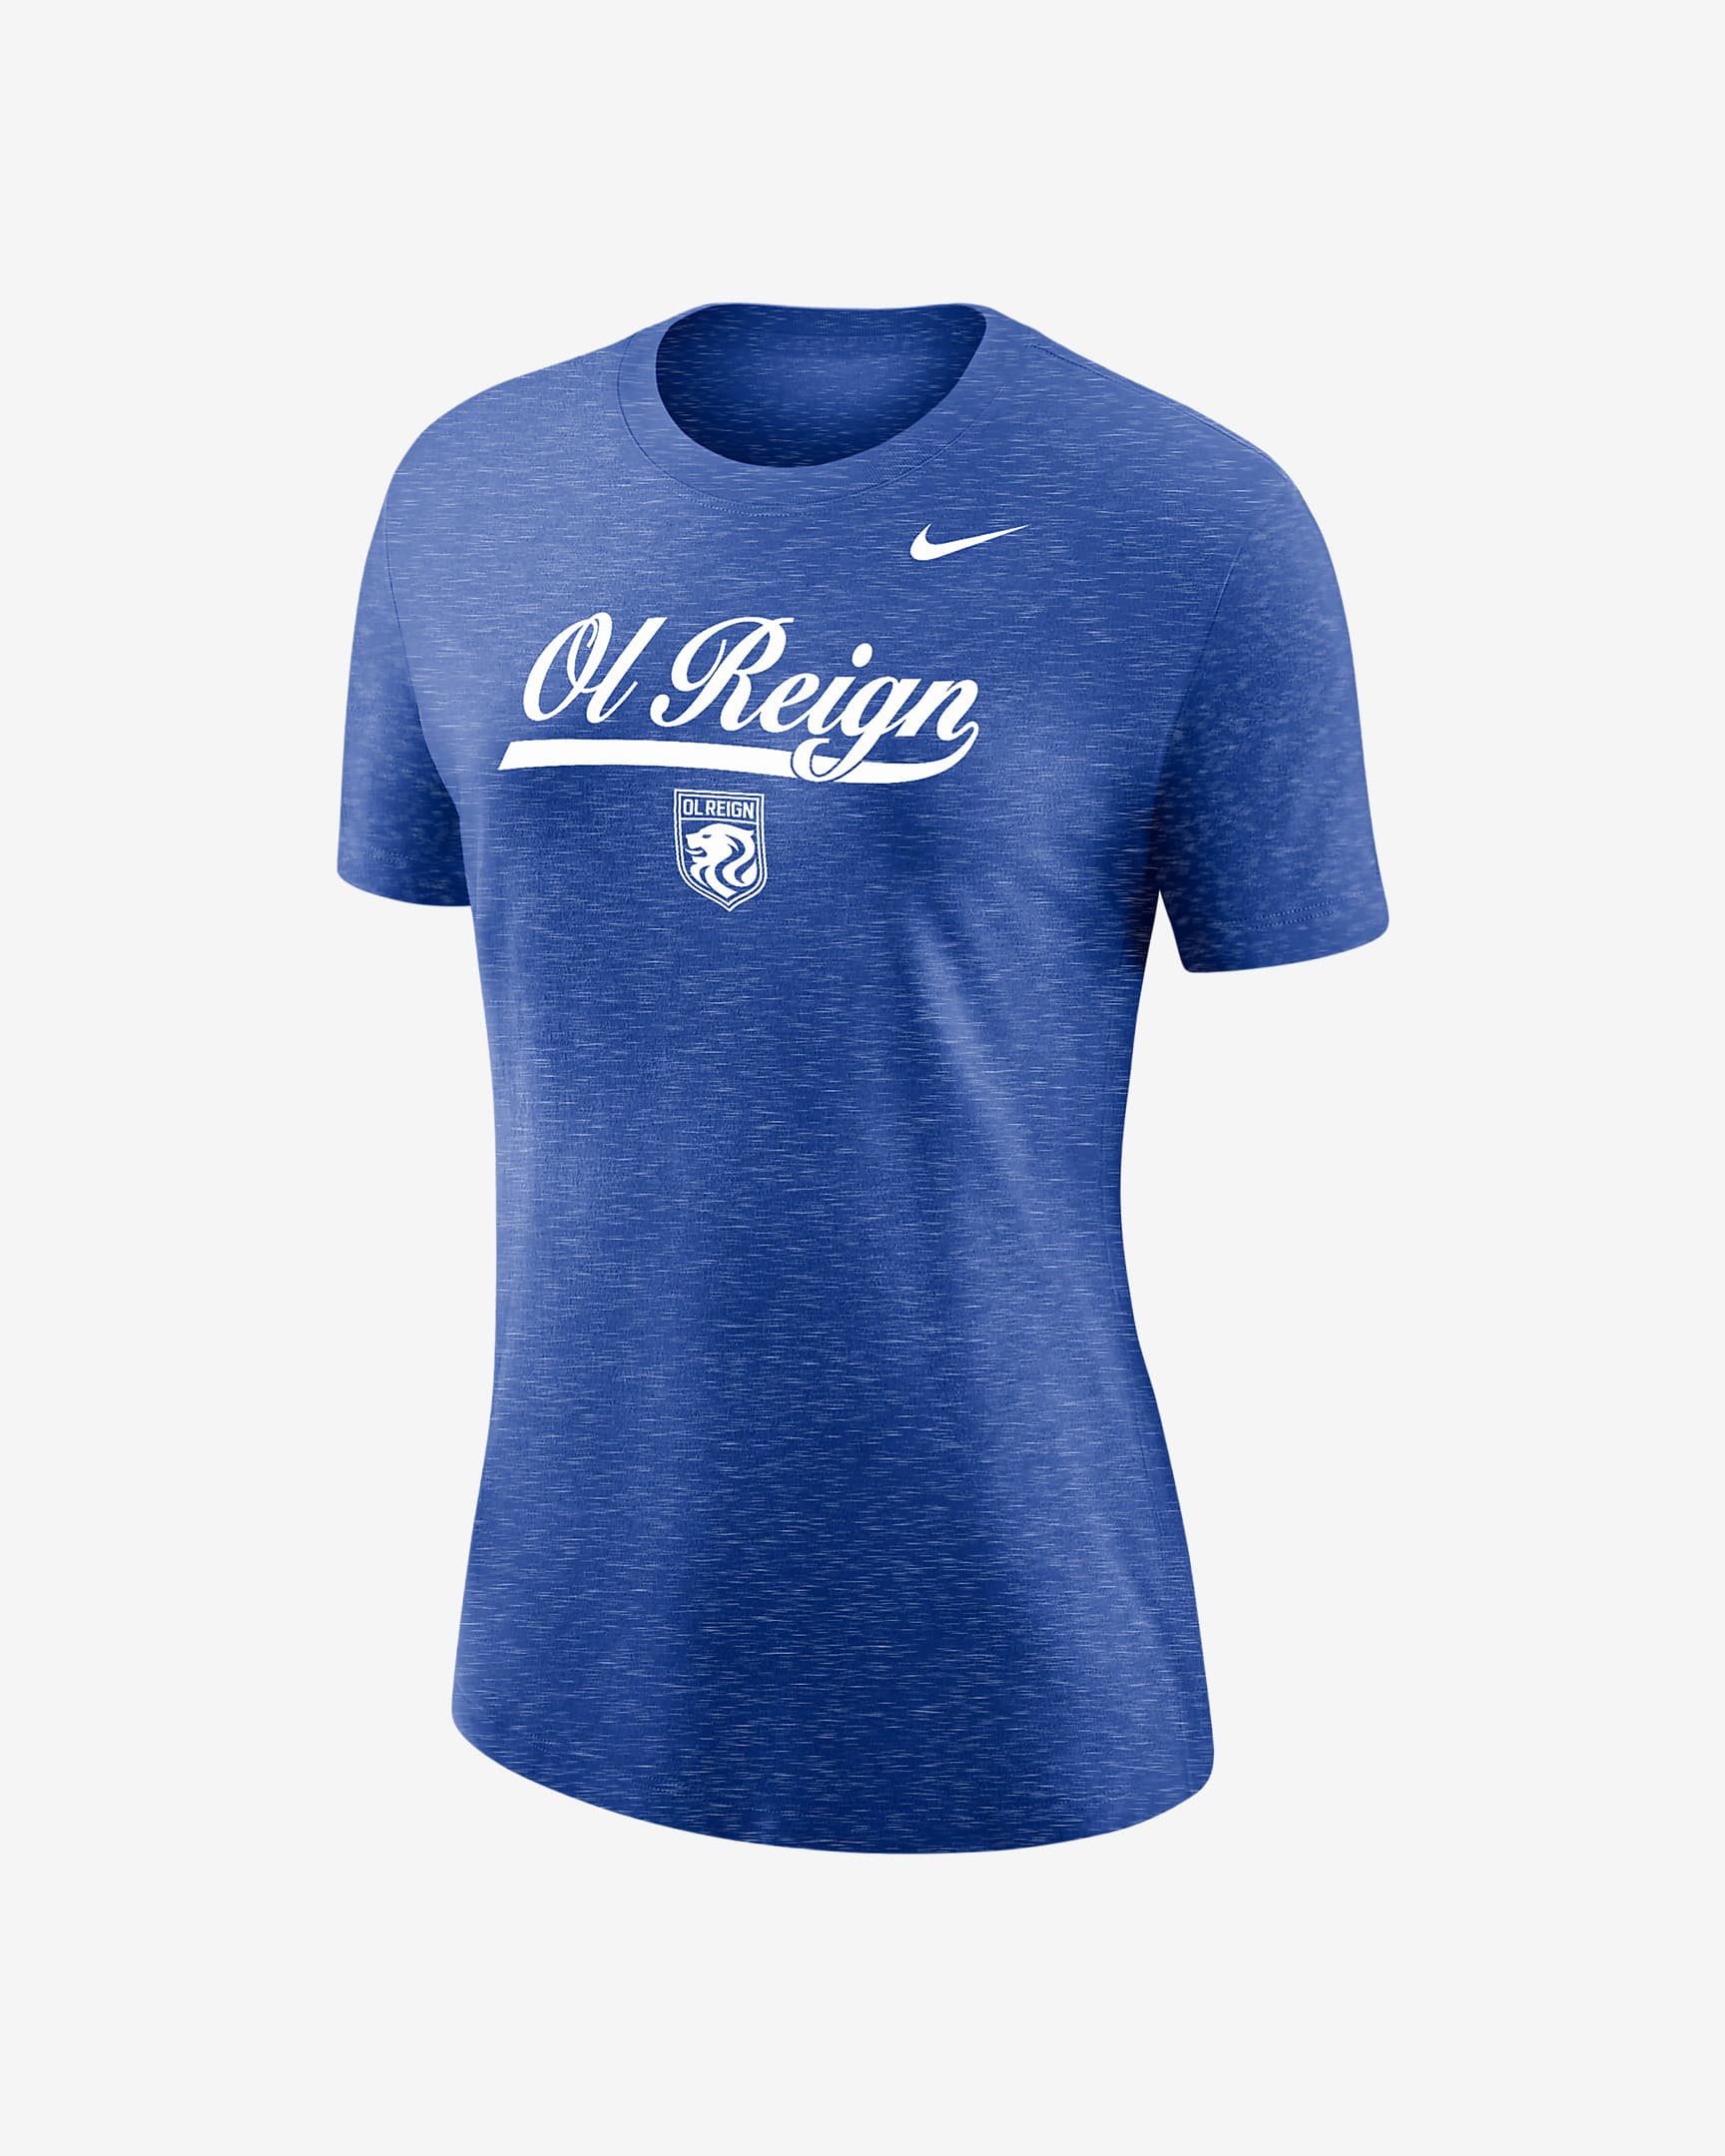 OL Reign Women's Nike Soccer Varsity T-Shirt. Nike.com